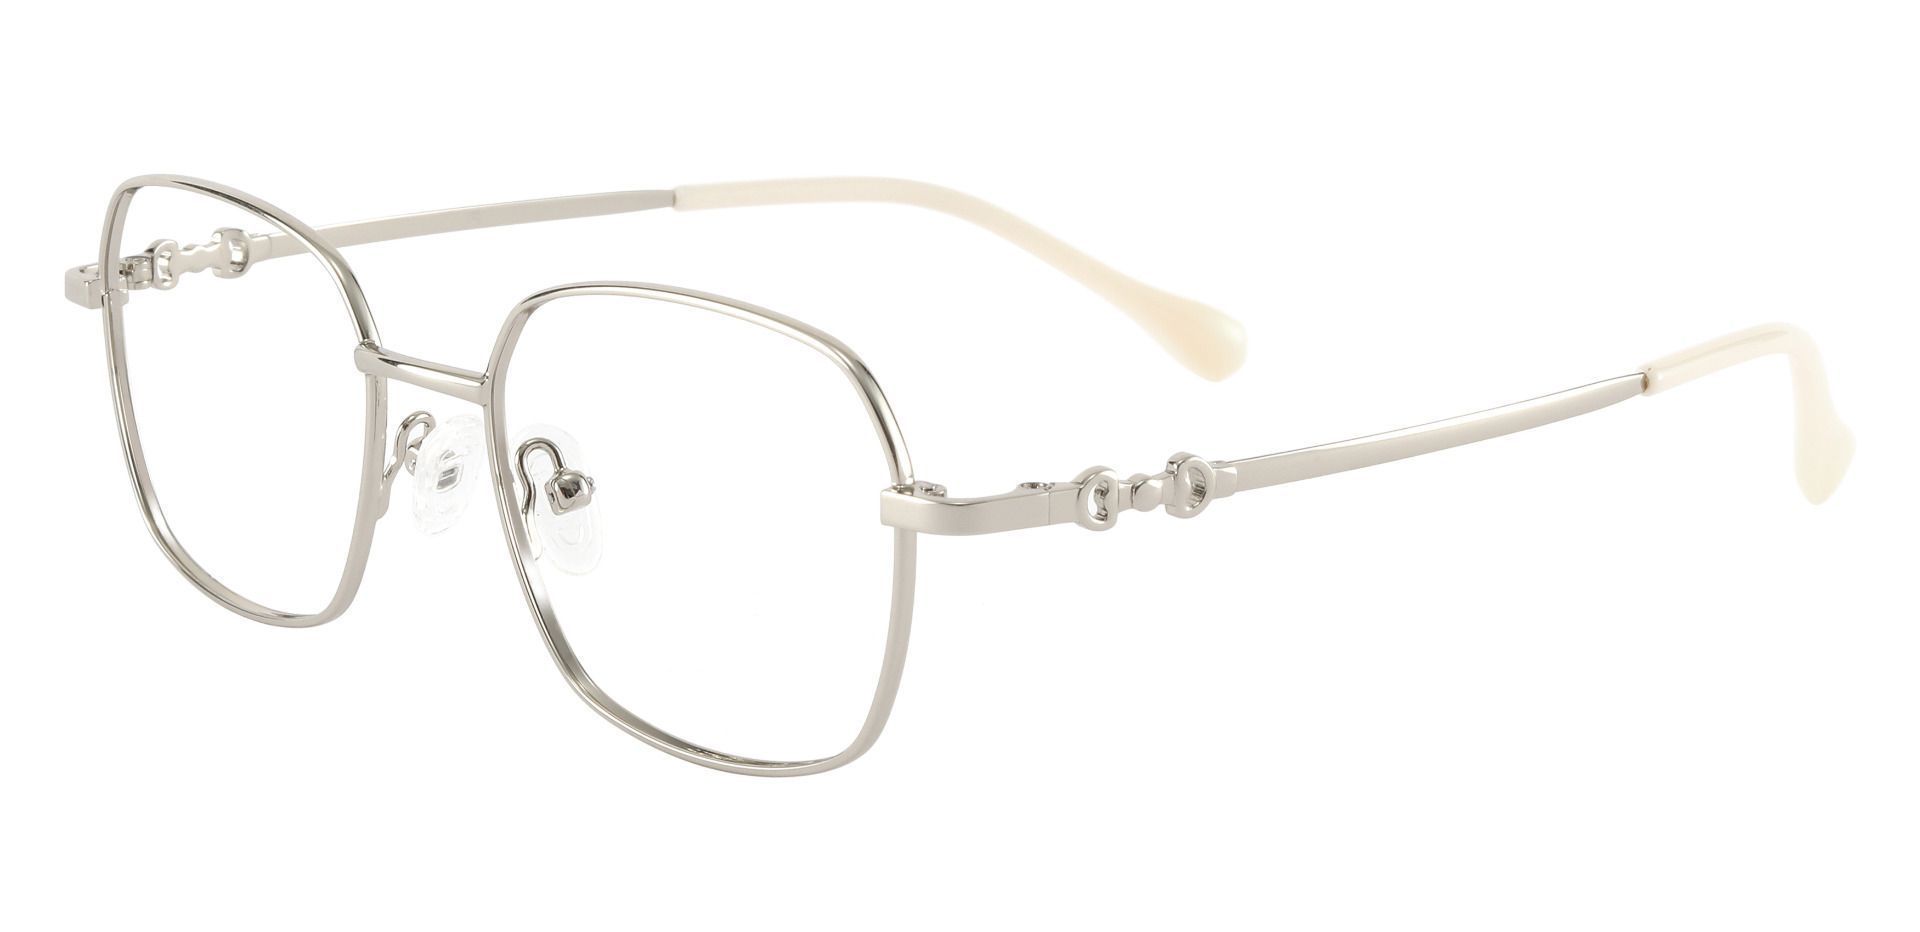 Averill Geometric Prescription Glasses - Silver